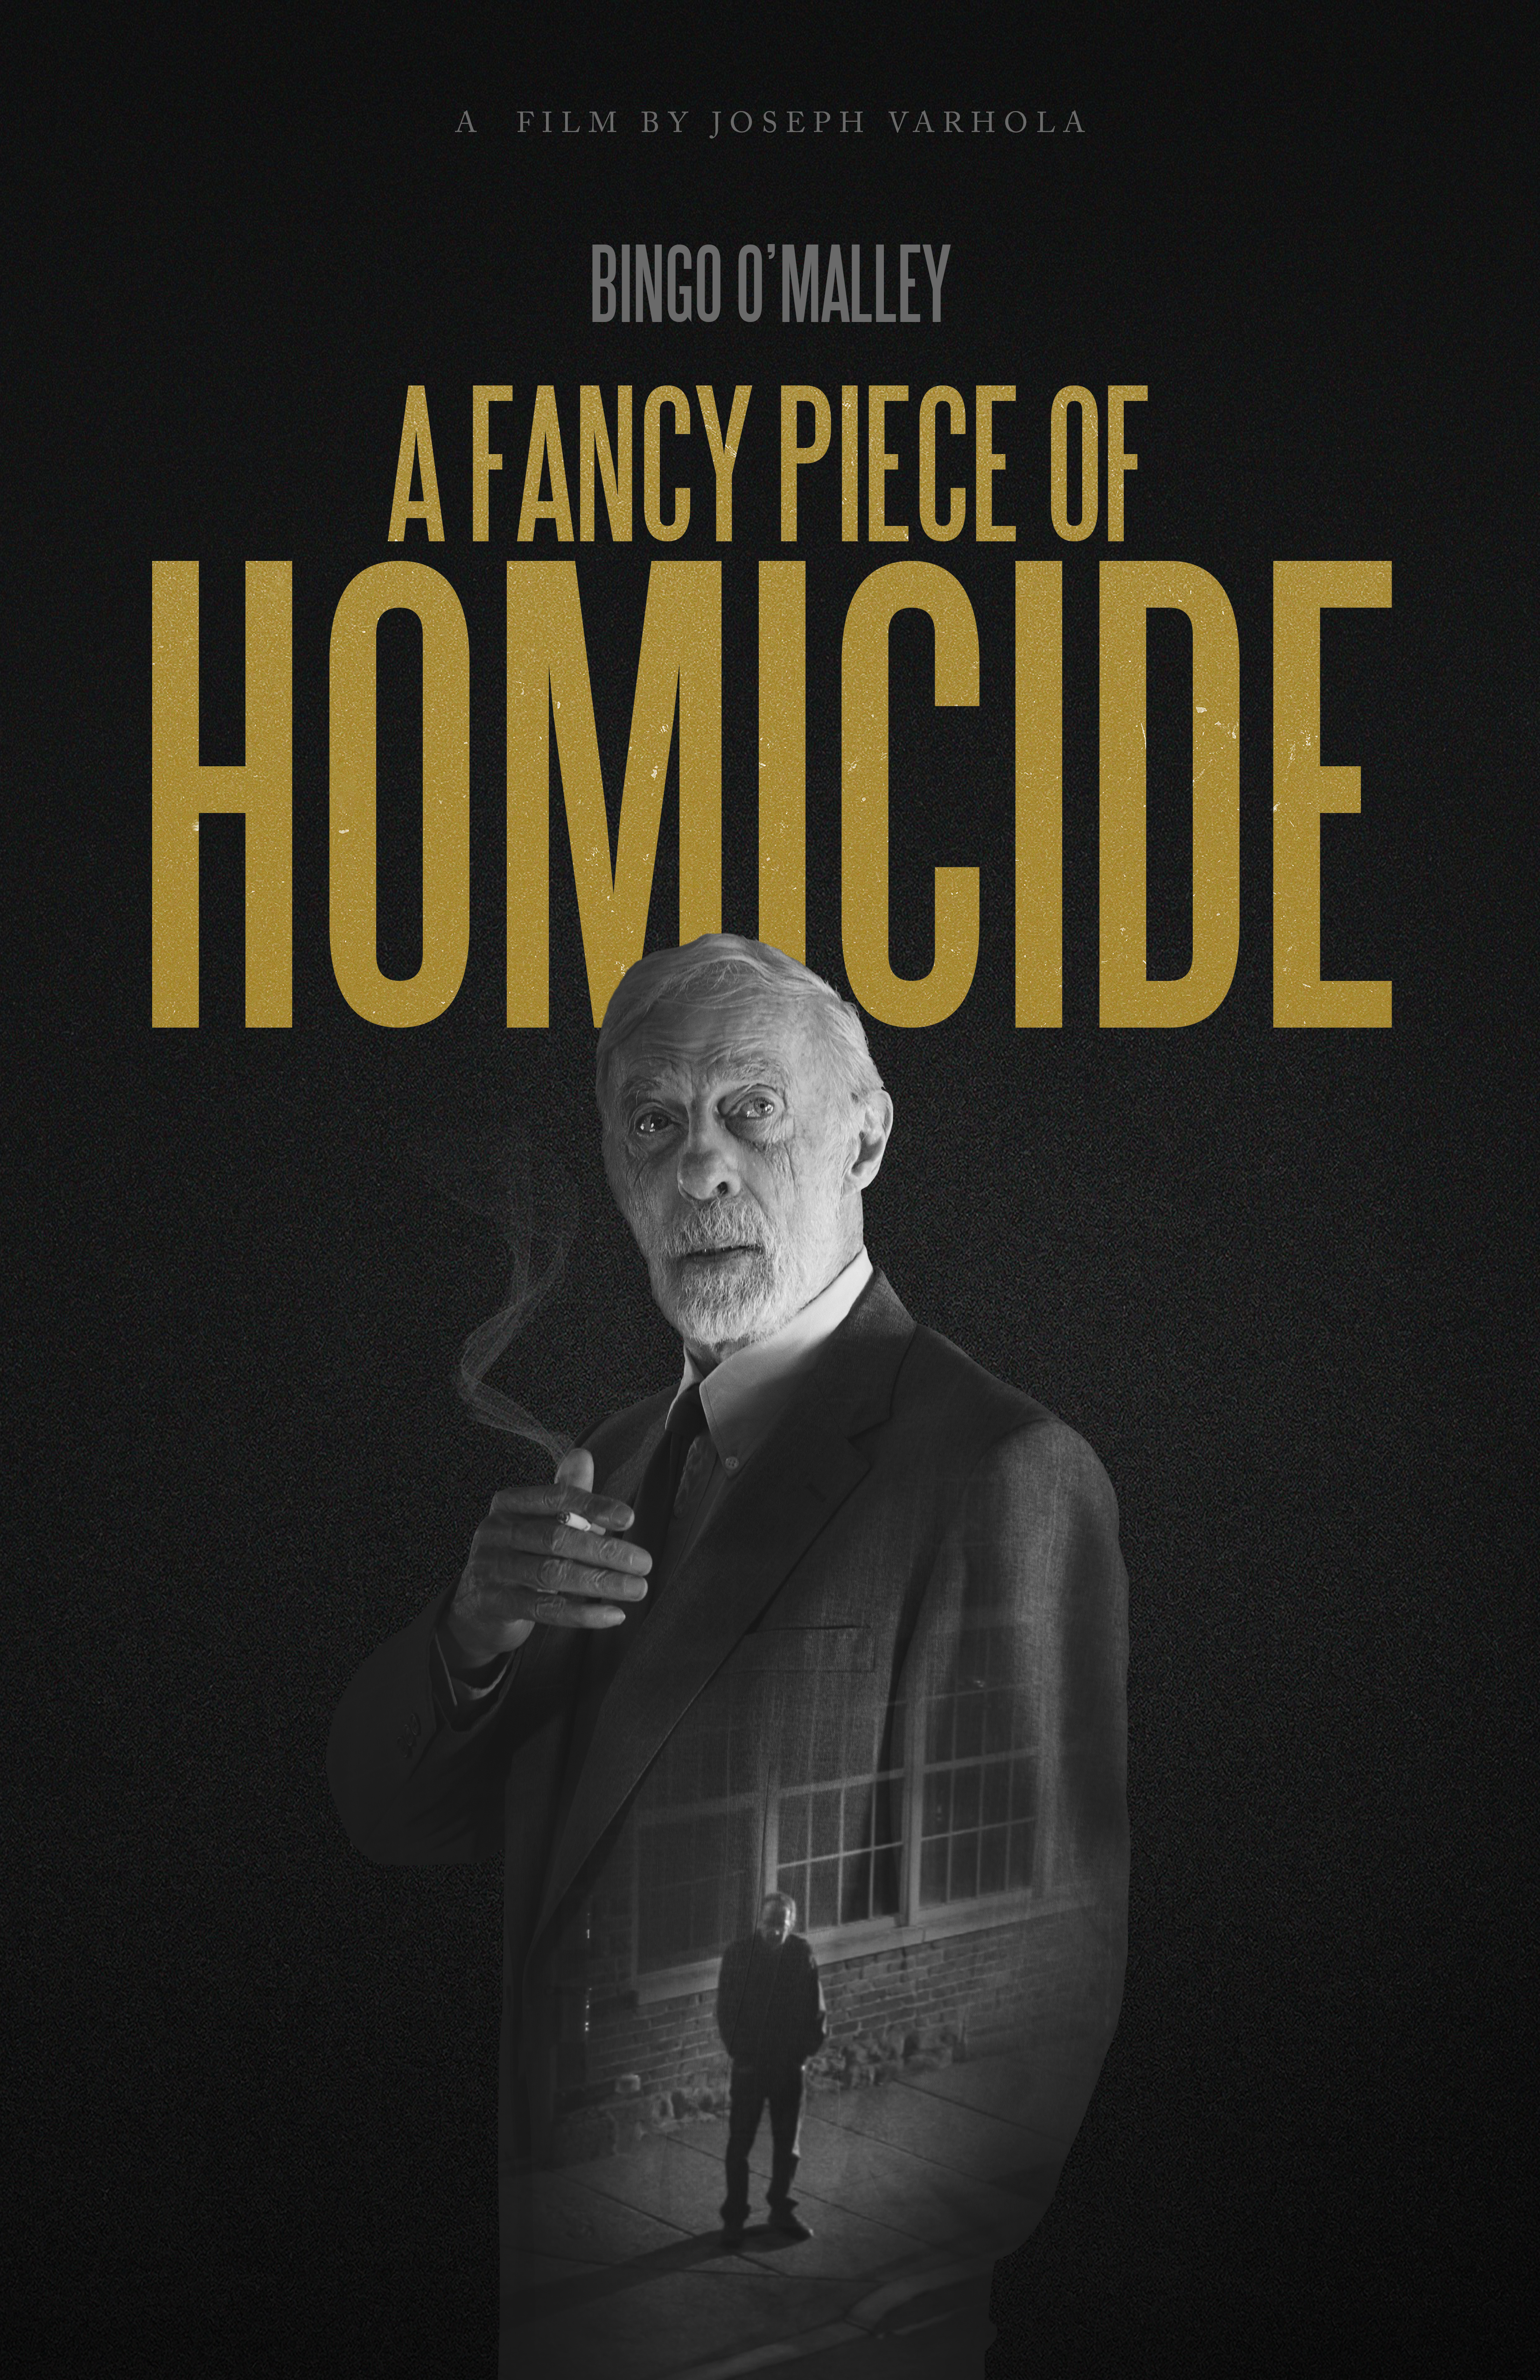 Nonton film A Fancy Piece of Homicide layarkaca21 indoxx1 ganool online streaming terbaru